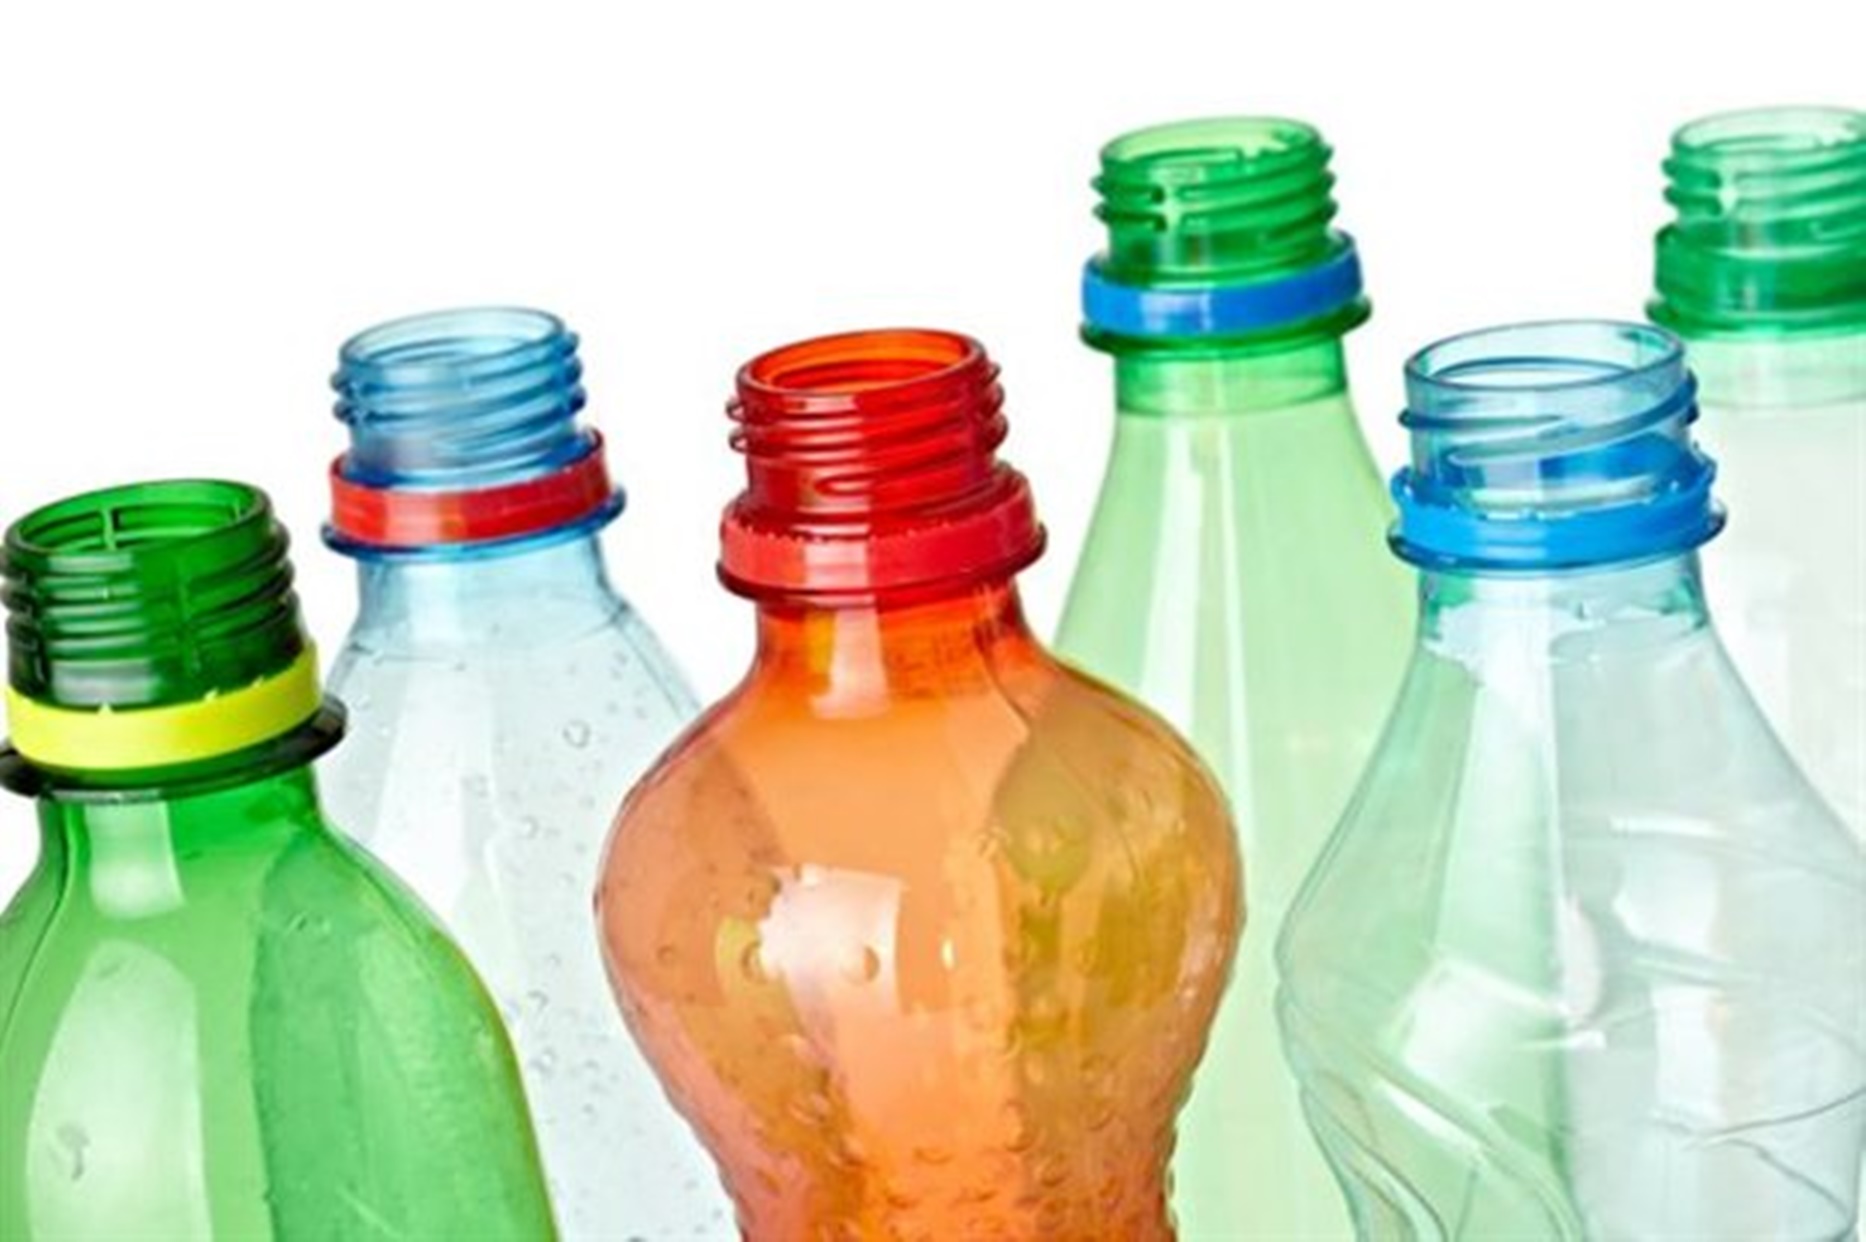 Κίνδυνος: Γιατί δεν πρέπει να αφήνουμε πλαστικά μπουκάλια στο αυτοκίνητο;